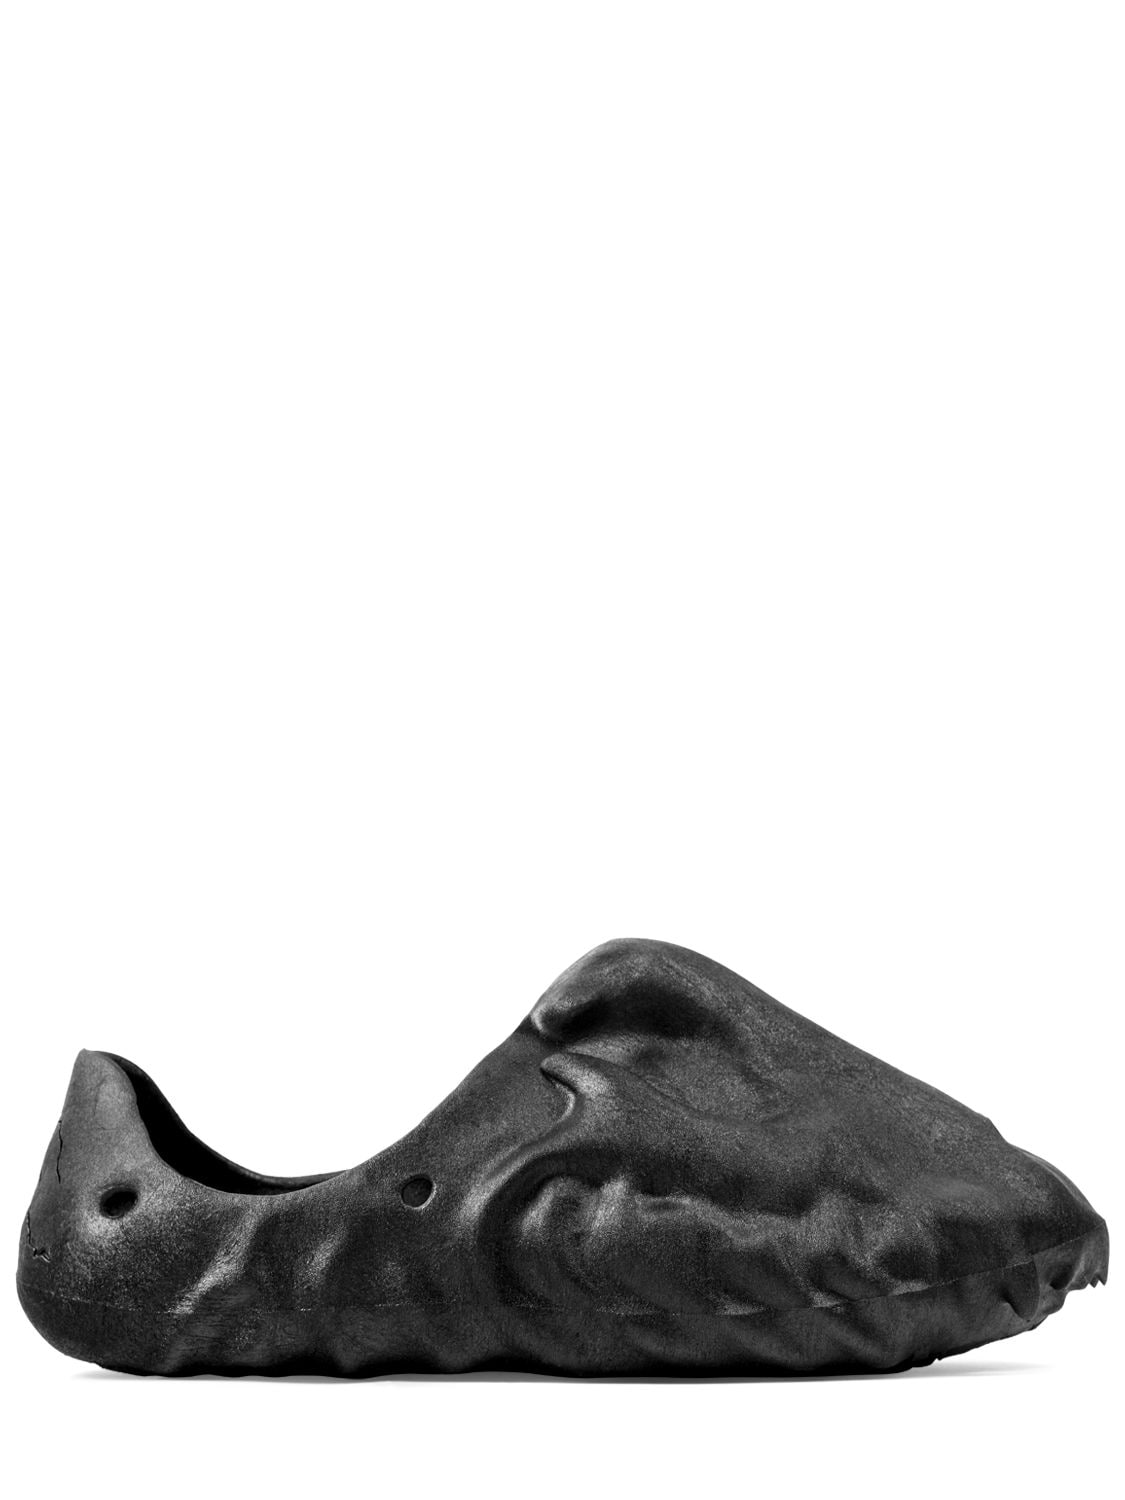 Kito Wares Fossil X Jaguar Jag Foam Runner Sneakers In Black